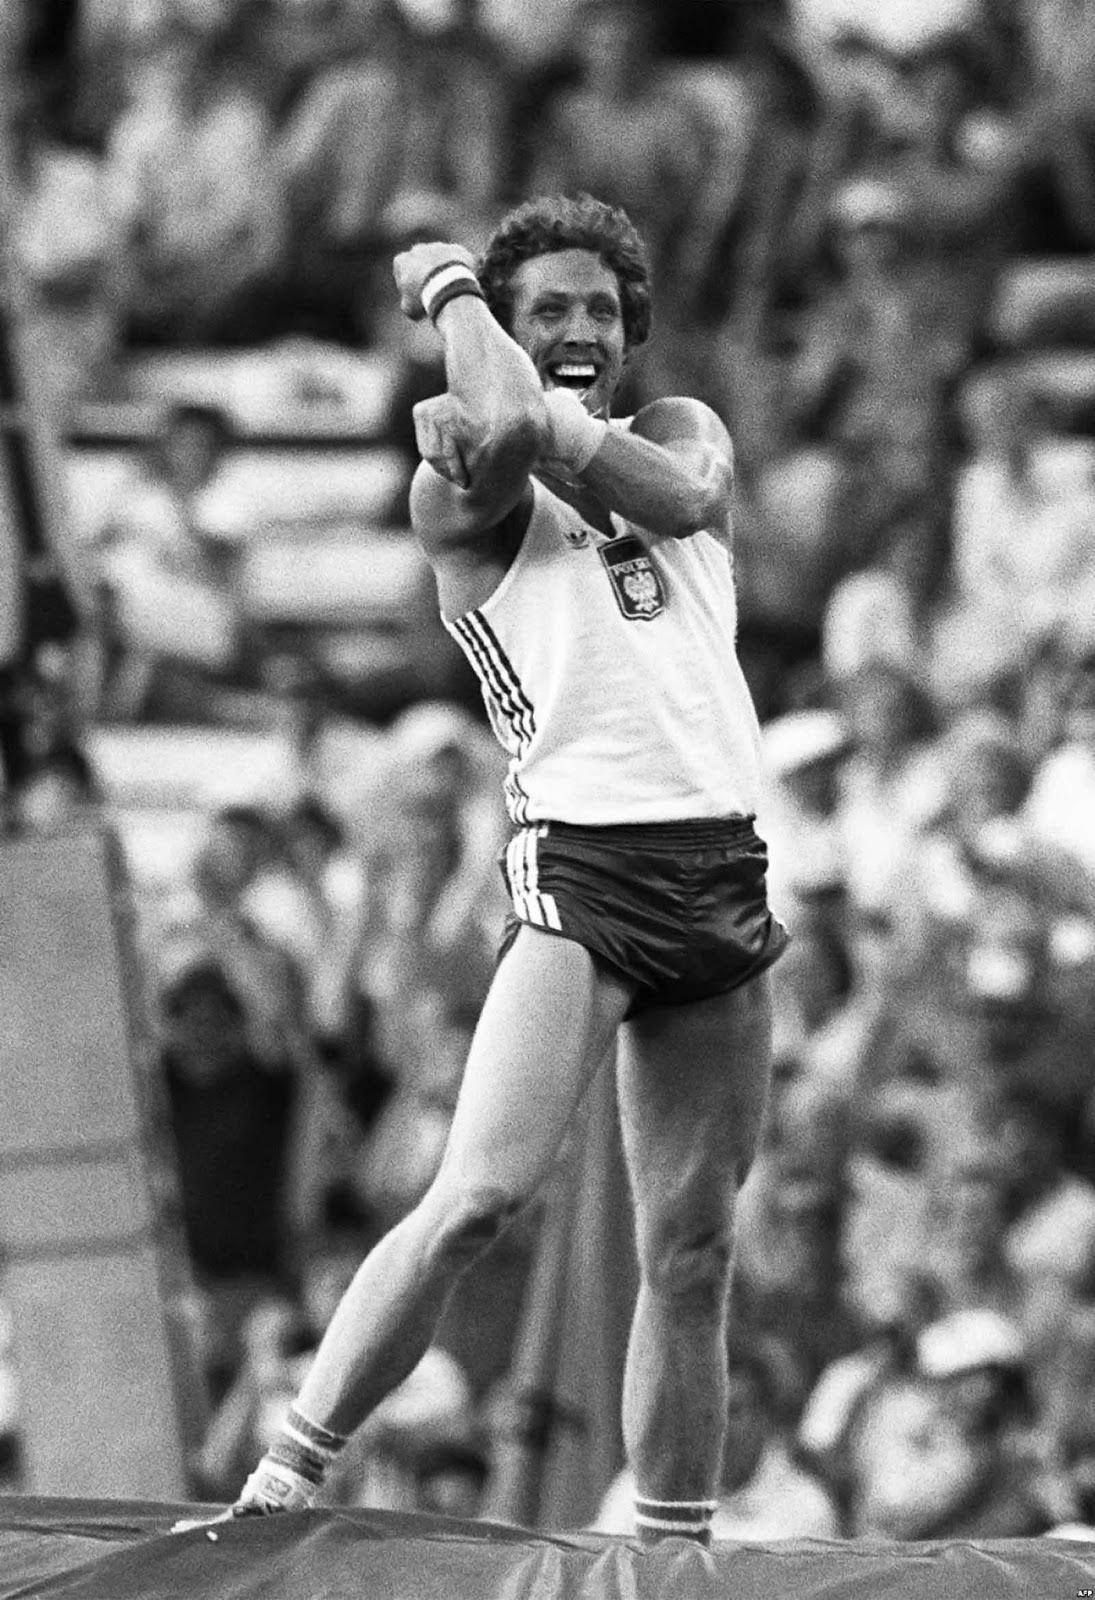 L'athlète polonais Wladyslaw Kozakiewicz montre son célèbre geste aux fans soviétiques qui l'ont hué, 1980